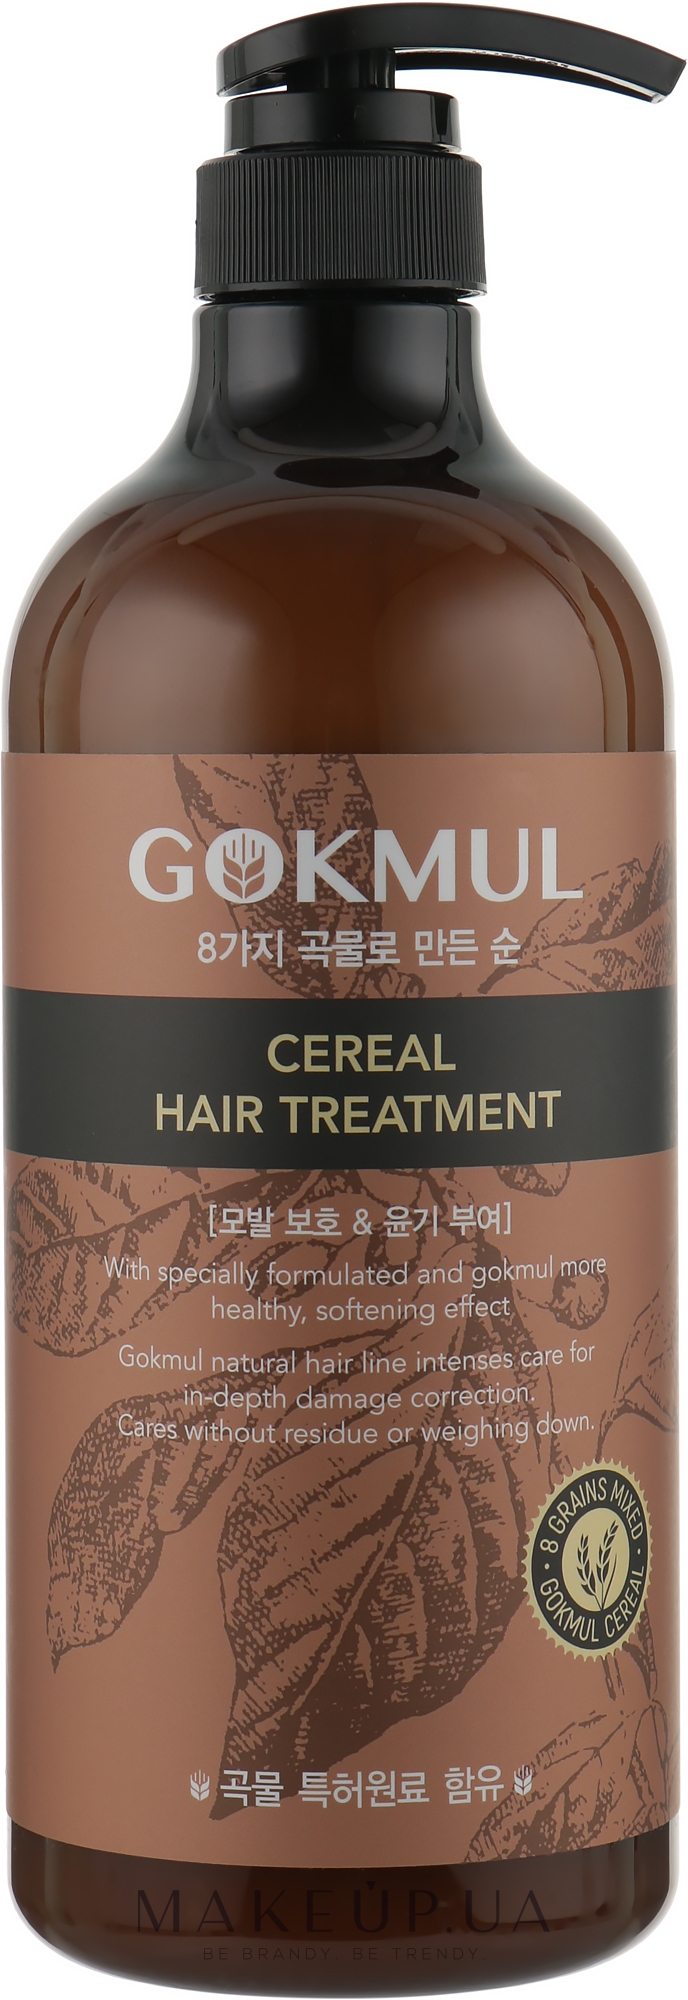 Відновлювальна маска для волосся зі злаками - Enough Gokmul 8 Grains Mixed Cereal Hair Treatment — фото 1000ml